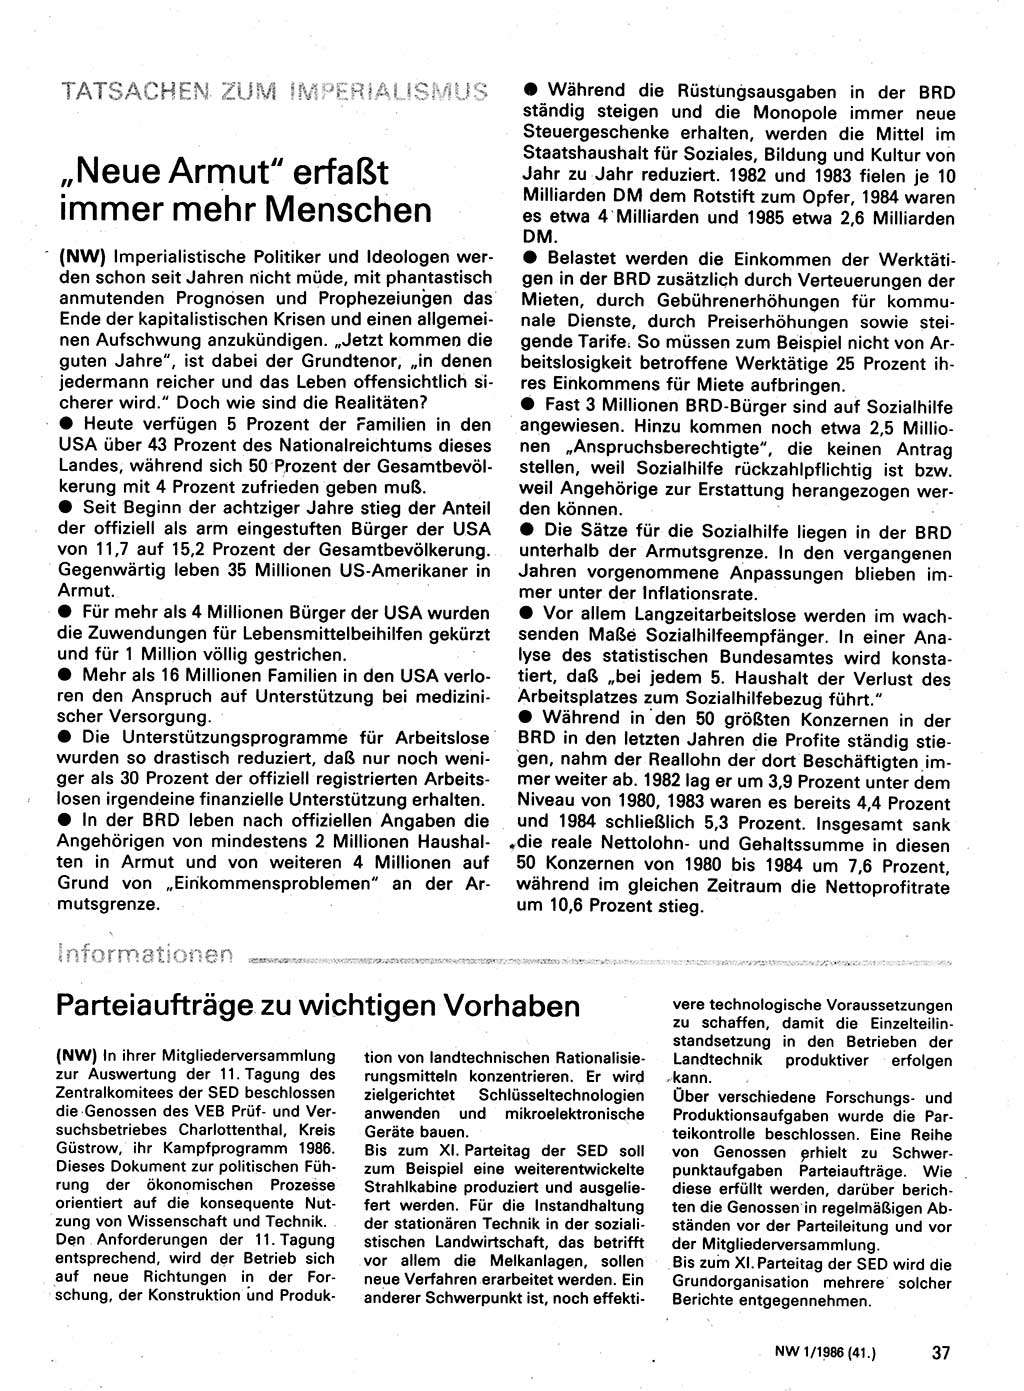 Neuer Weg (NW), Organ des Zentralkomitees (ZK) der SED (Sozialistische Einheitspartei Deutschlands) für Fragen des Parteilebens, 41. Jahrgang [Deutsche Demokratische Republik (DDR)] 1986, Seite 37 (NW ZK SED DDR 1986, S. 37)